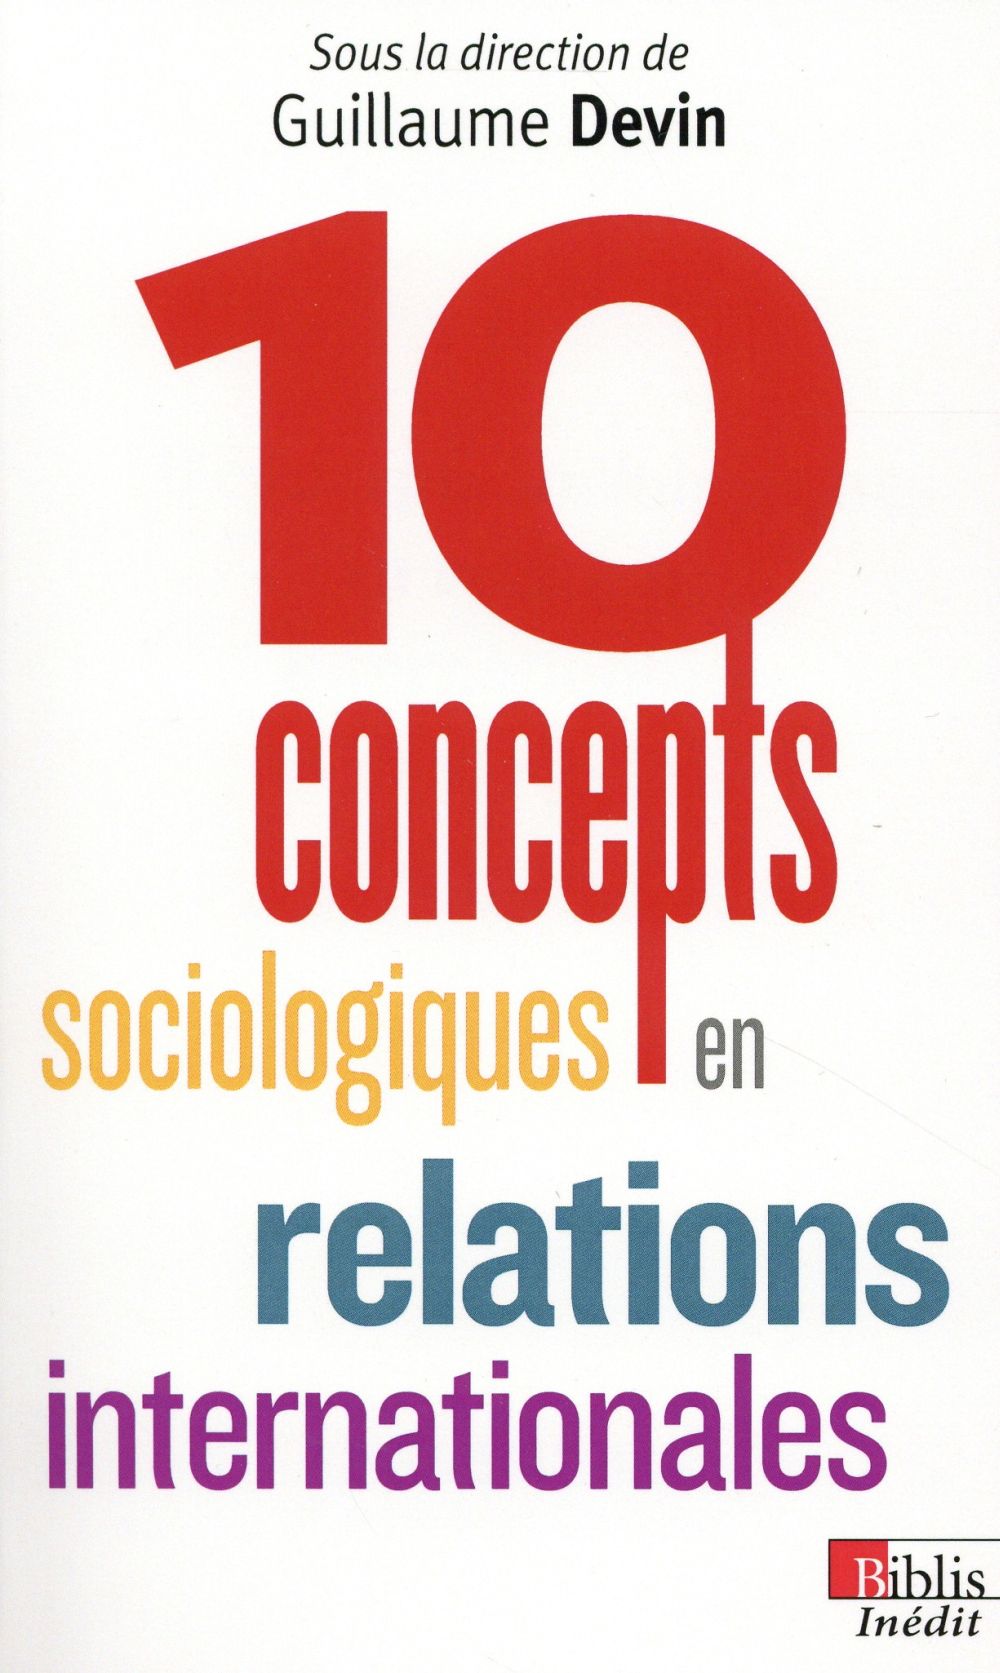 DIX CONCEPTS SOCIOLOGIQUES EN RELATIONS INTERNATIONALES